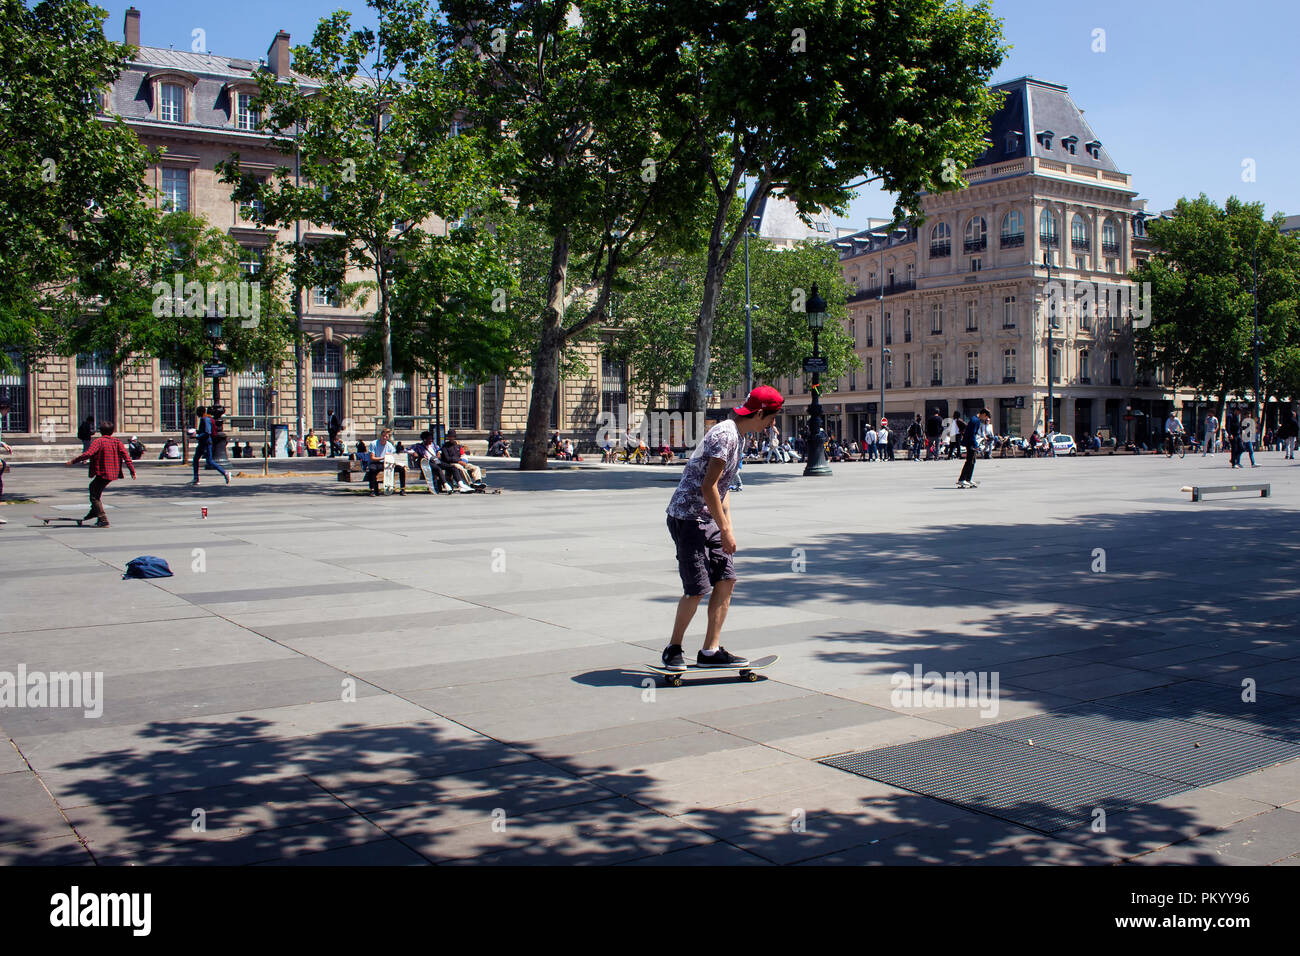 Los jóvenes patinar en la plaza de la República (Place de la République) en París. La imagen muestra la cultura joven de la ciudad. Foto de stock